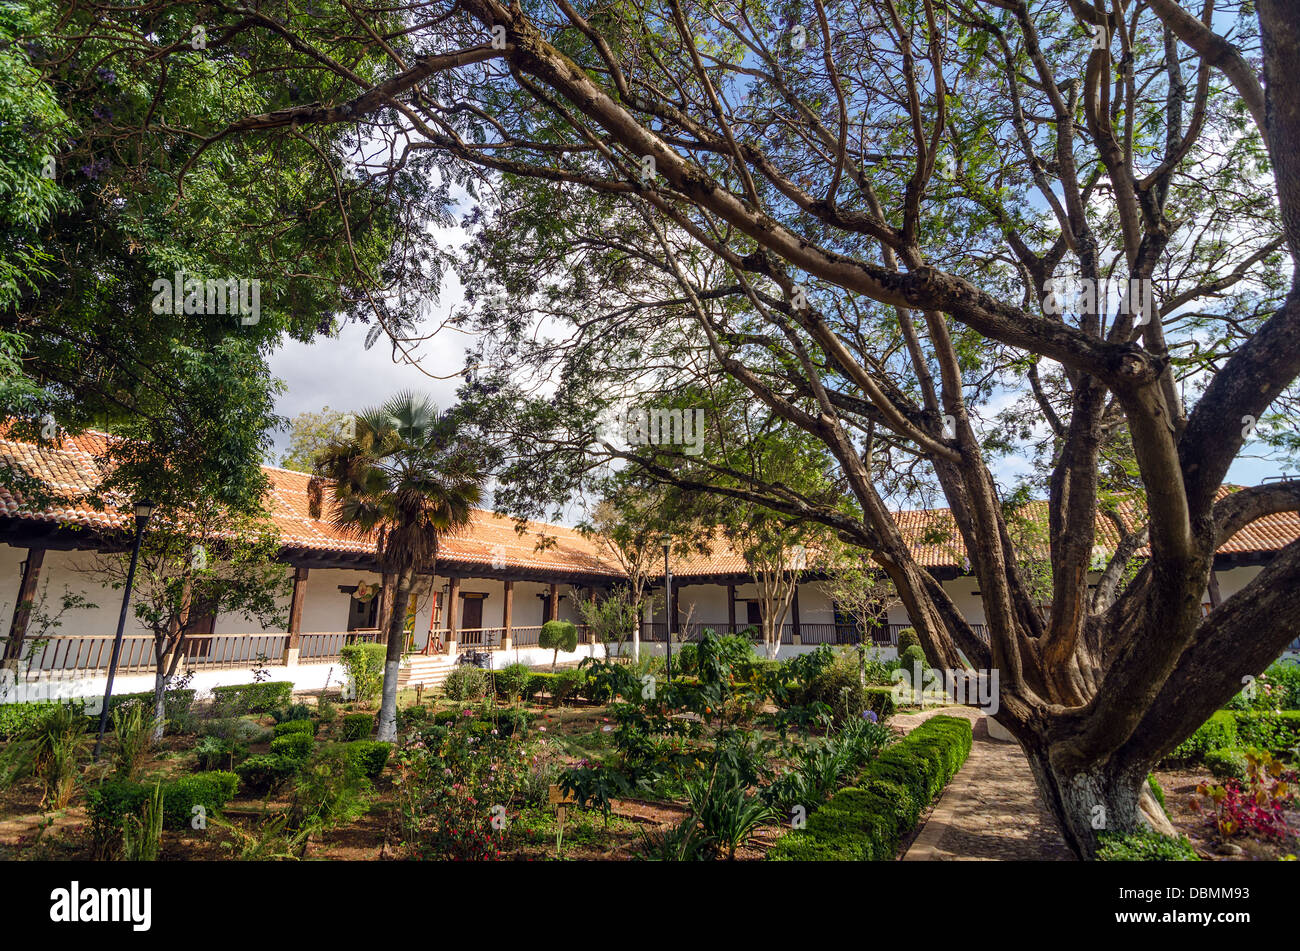 Colonial courtyard with lush plants in San Cristobal de las Casas, Mexico Stock Photo